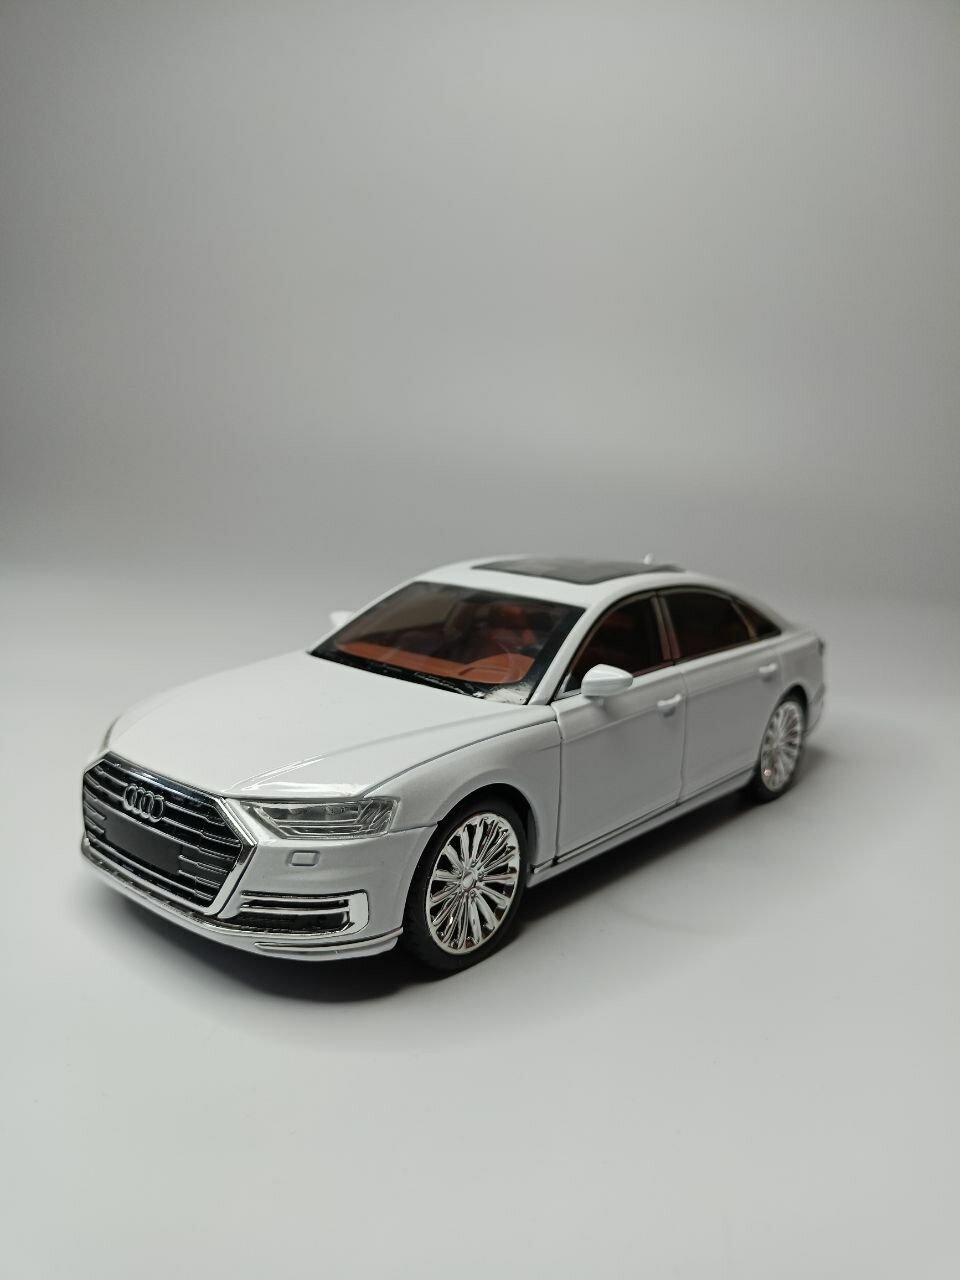 Модель автомобиля Audi А8 коллекционная металлическая игрушка масштаб 1:24 белый